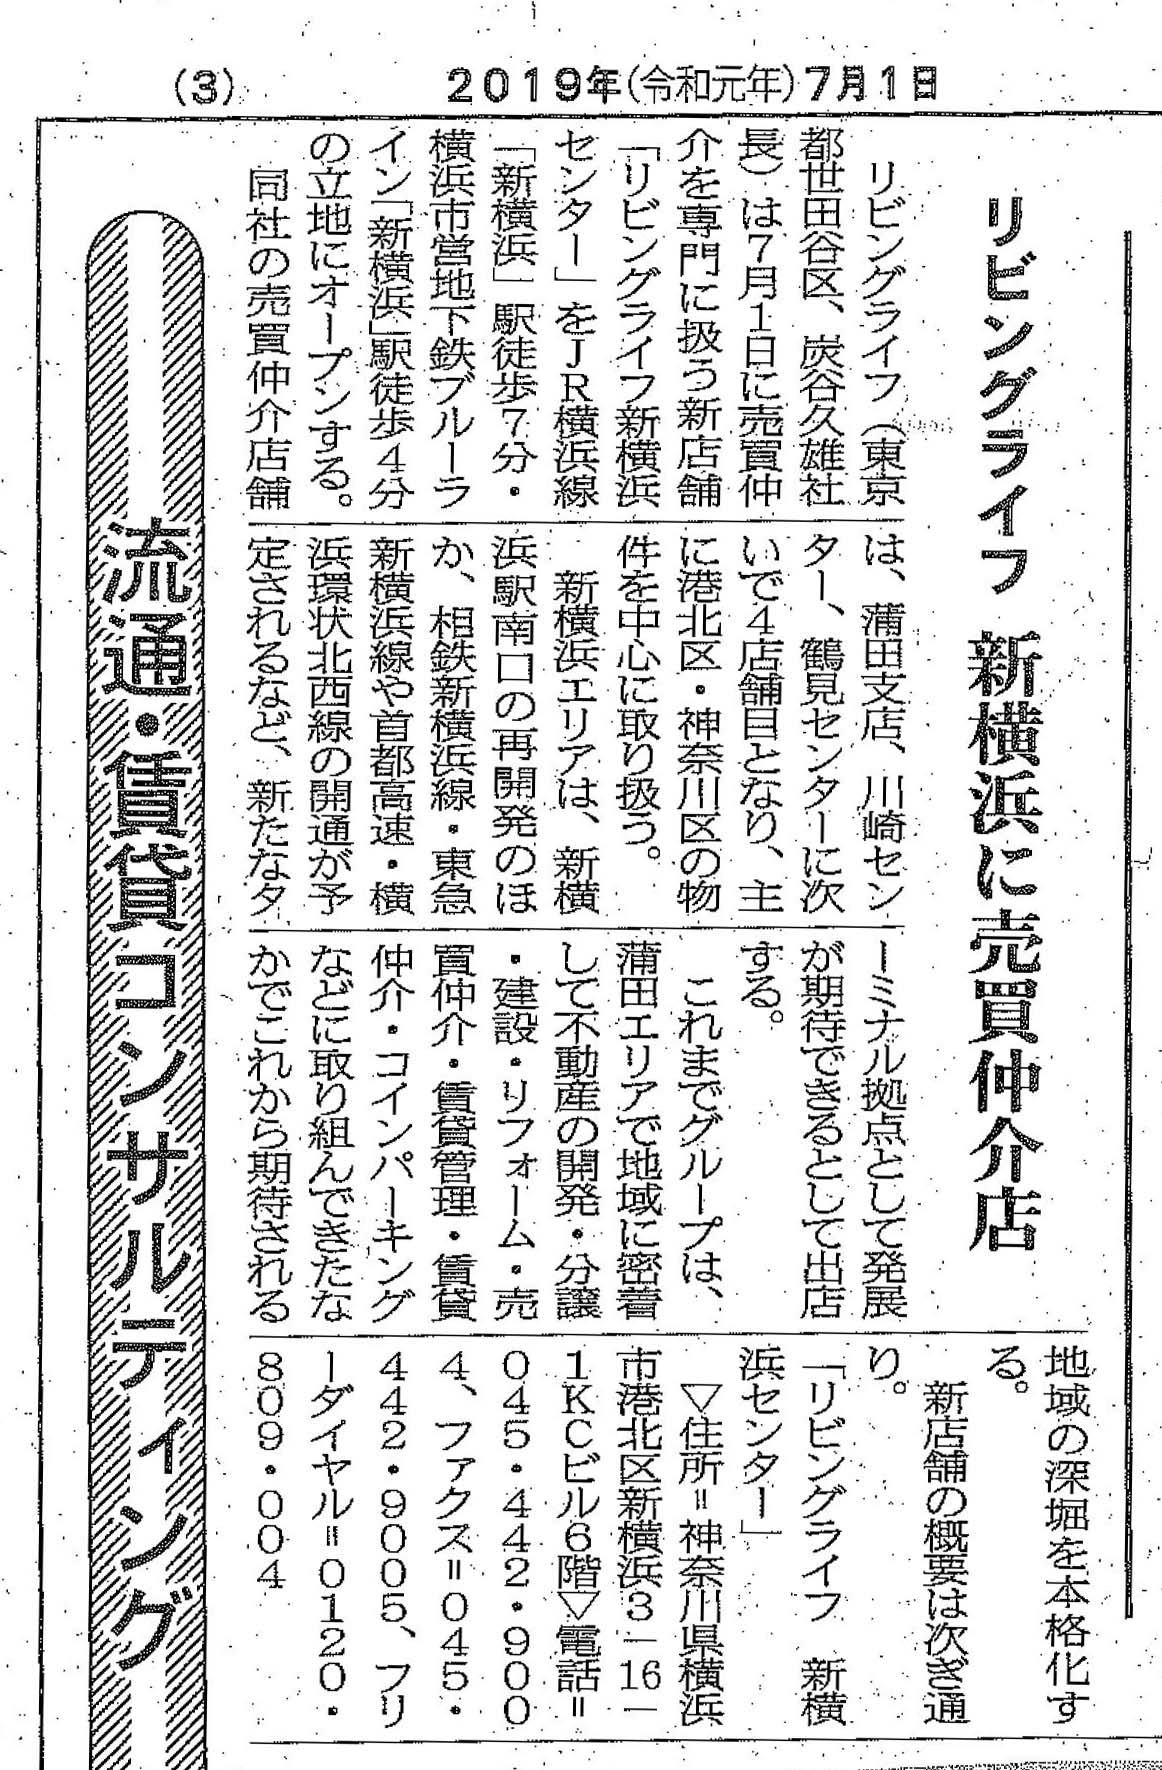 『週刊住宅』に「リビングライフ 新横浜センター」開設の記事が掲載されました。